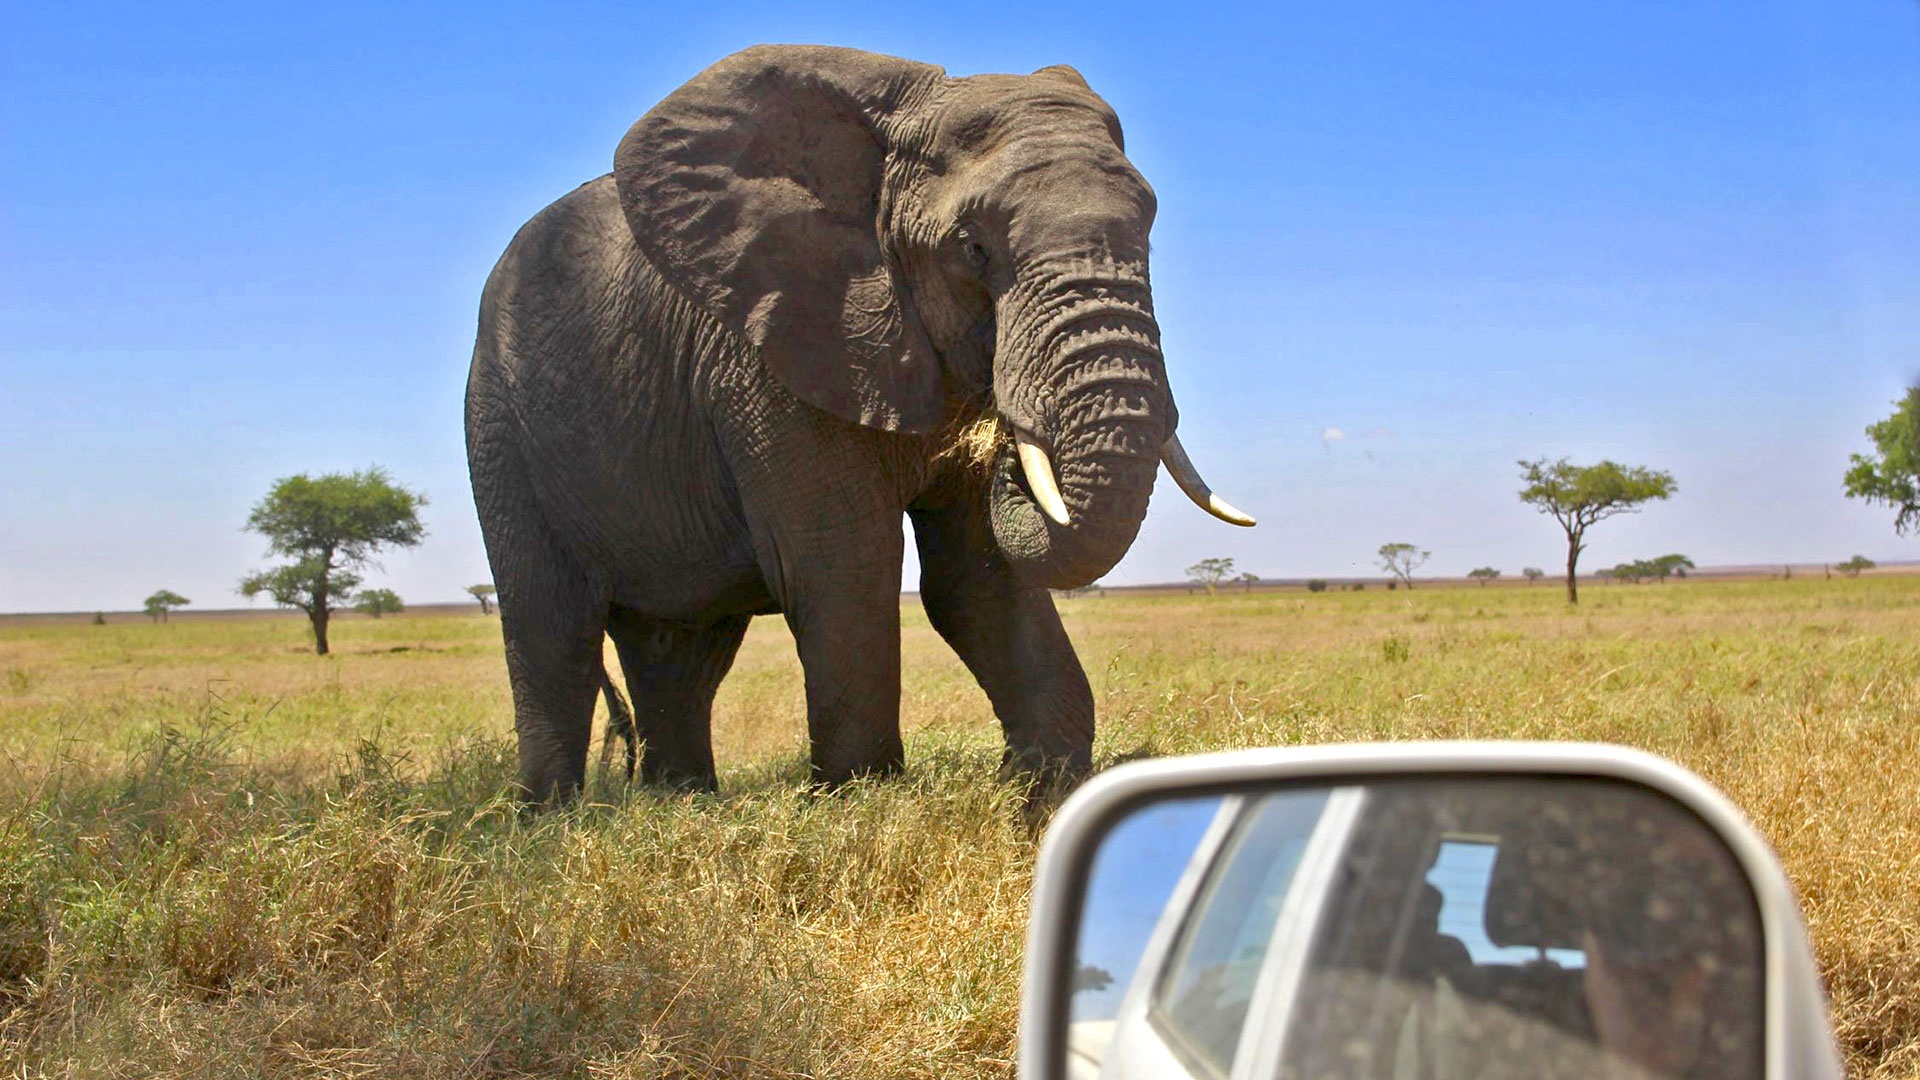 Elefant auf Mietwagenreise durch Tansania